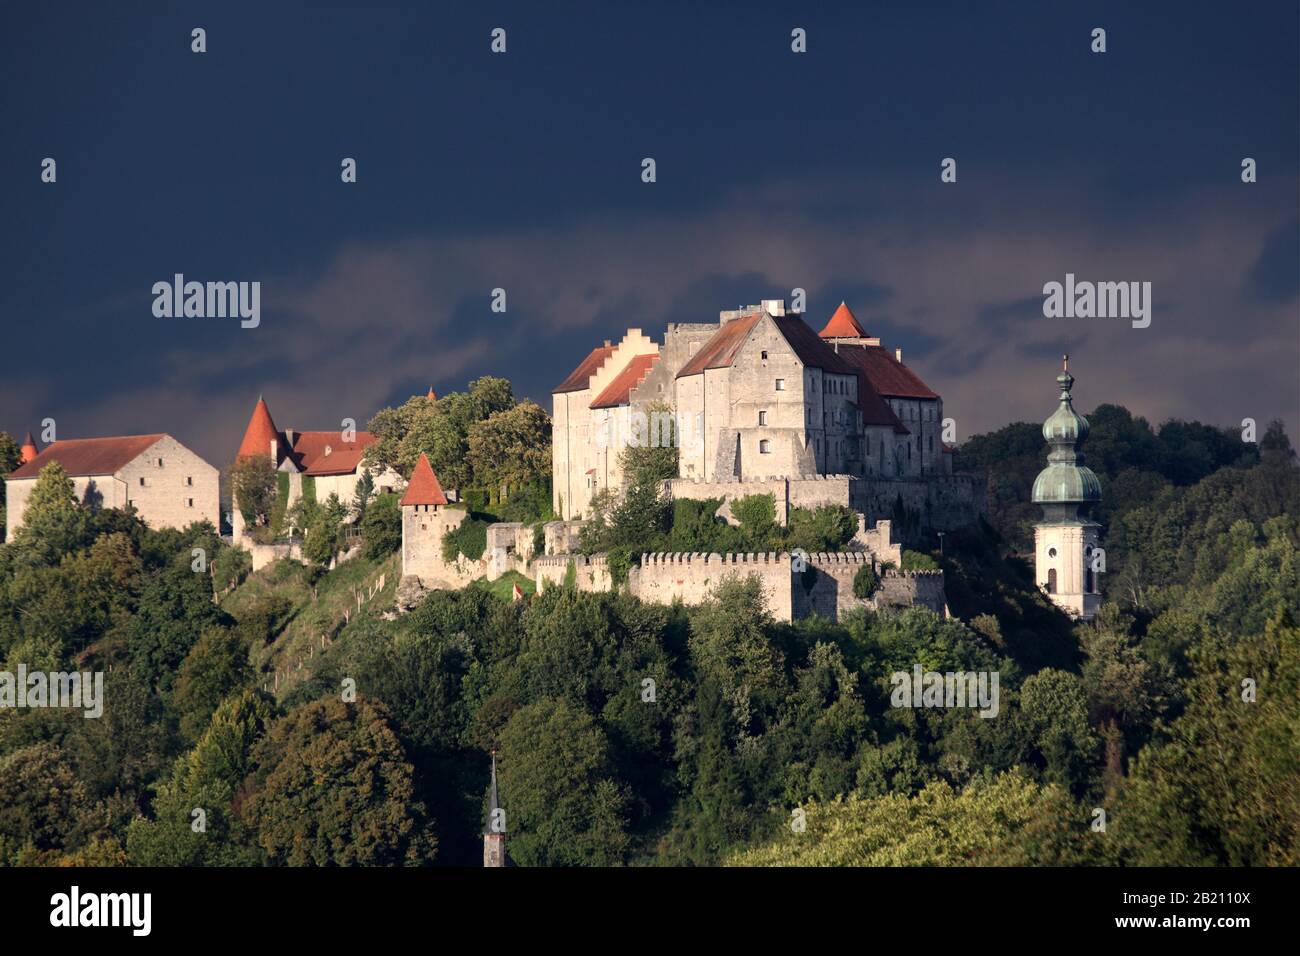 Burghausen castle against a thunderstorm sky, Burghausen, Upper Bavaria, Bavaria, Germany Stock Photo